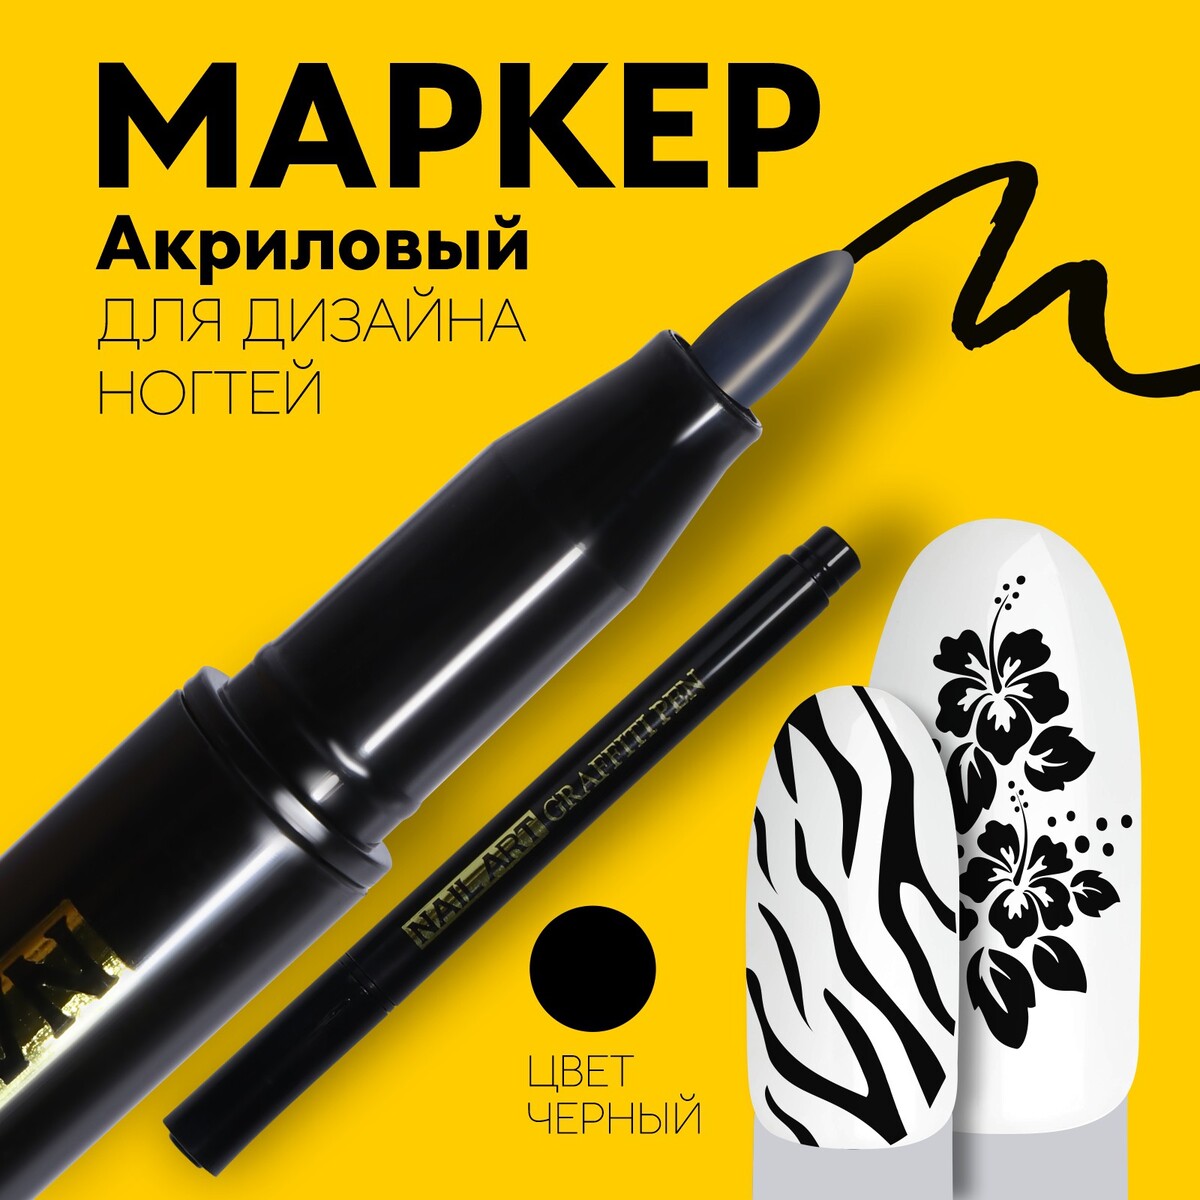 Маркер для дизайна ногтей, акриловый, 13,5 см, цвет черный маркер акриловый сонет 2мм серебро сонет